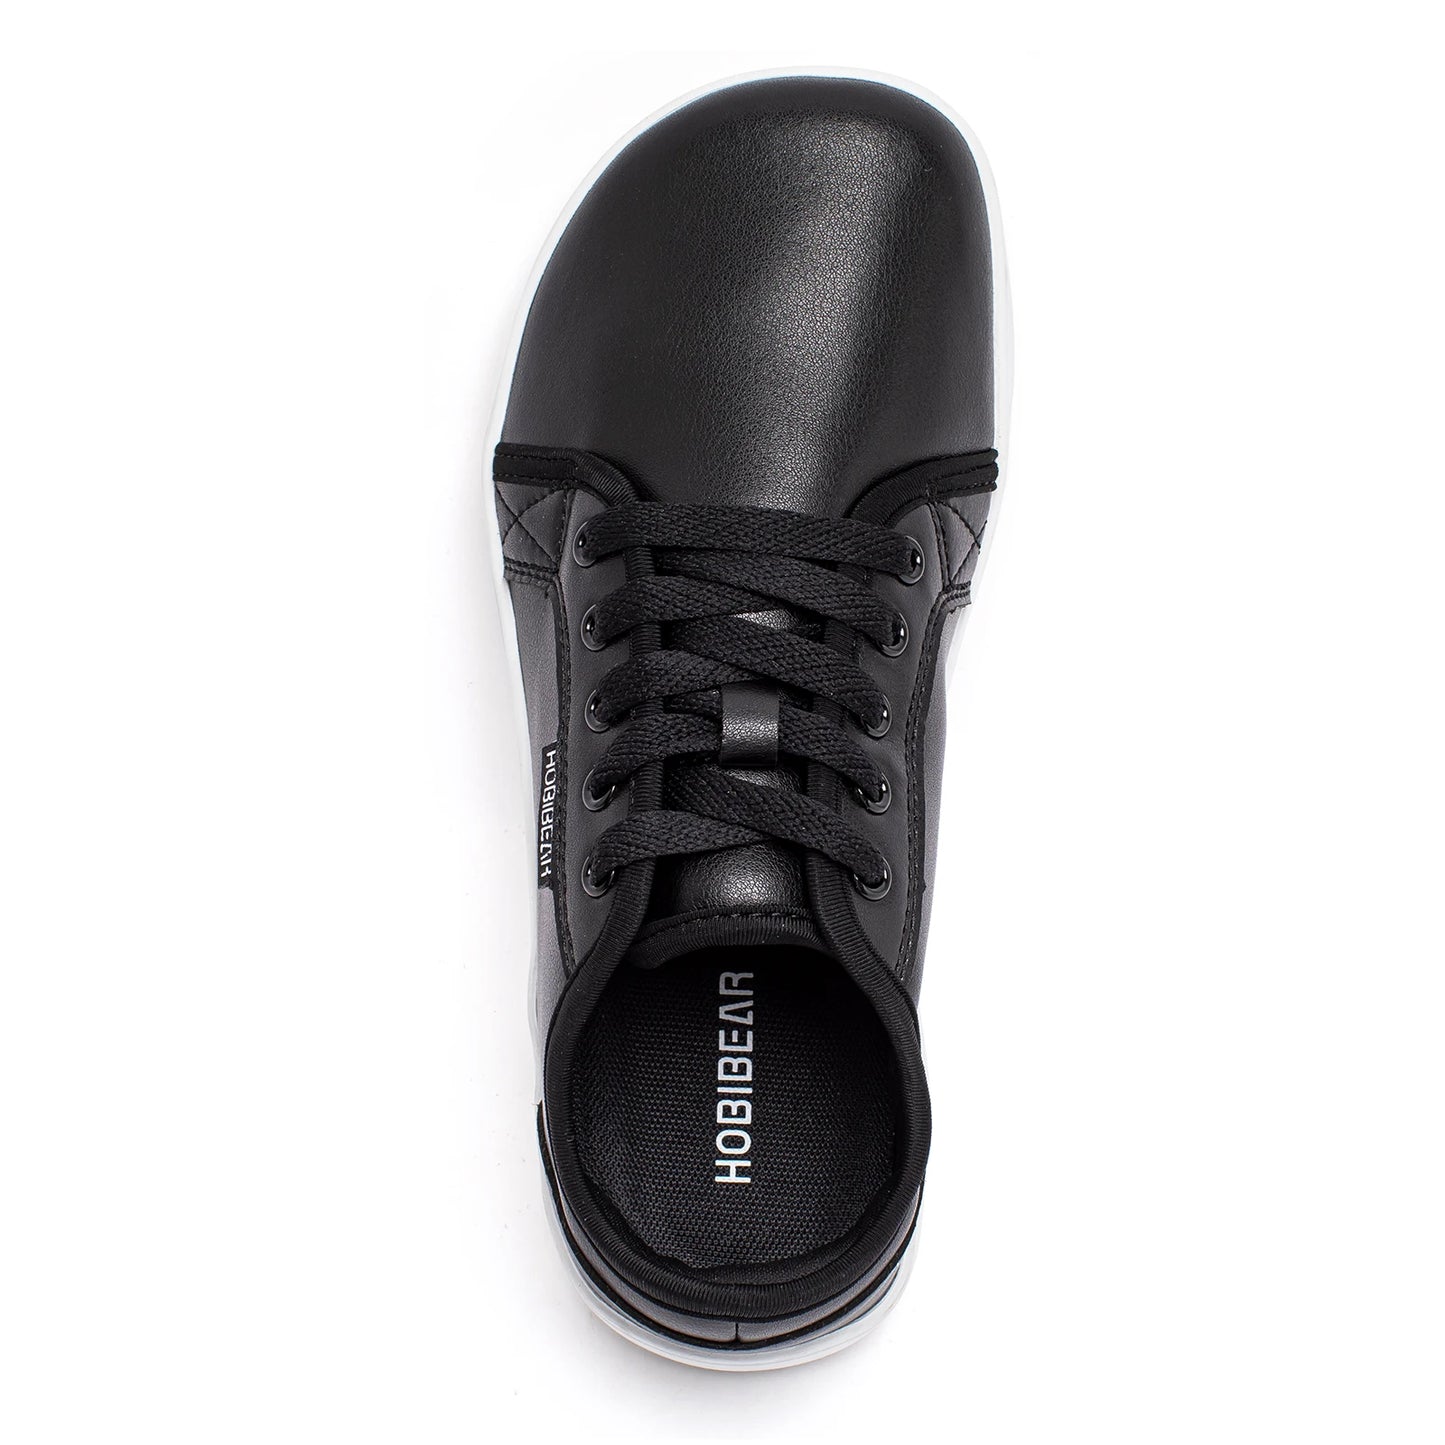 Moderner, minimalistischer orthopädischer Schuh für Damen und Herren